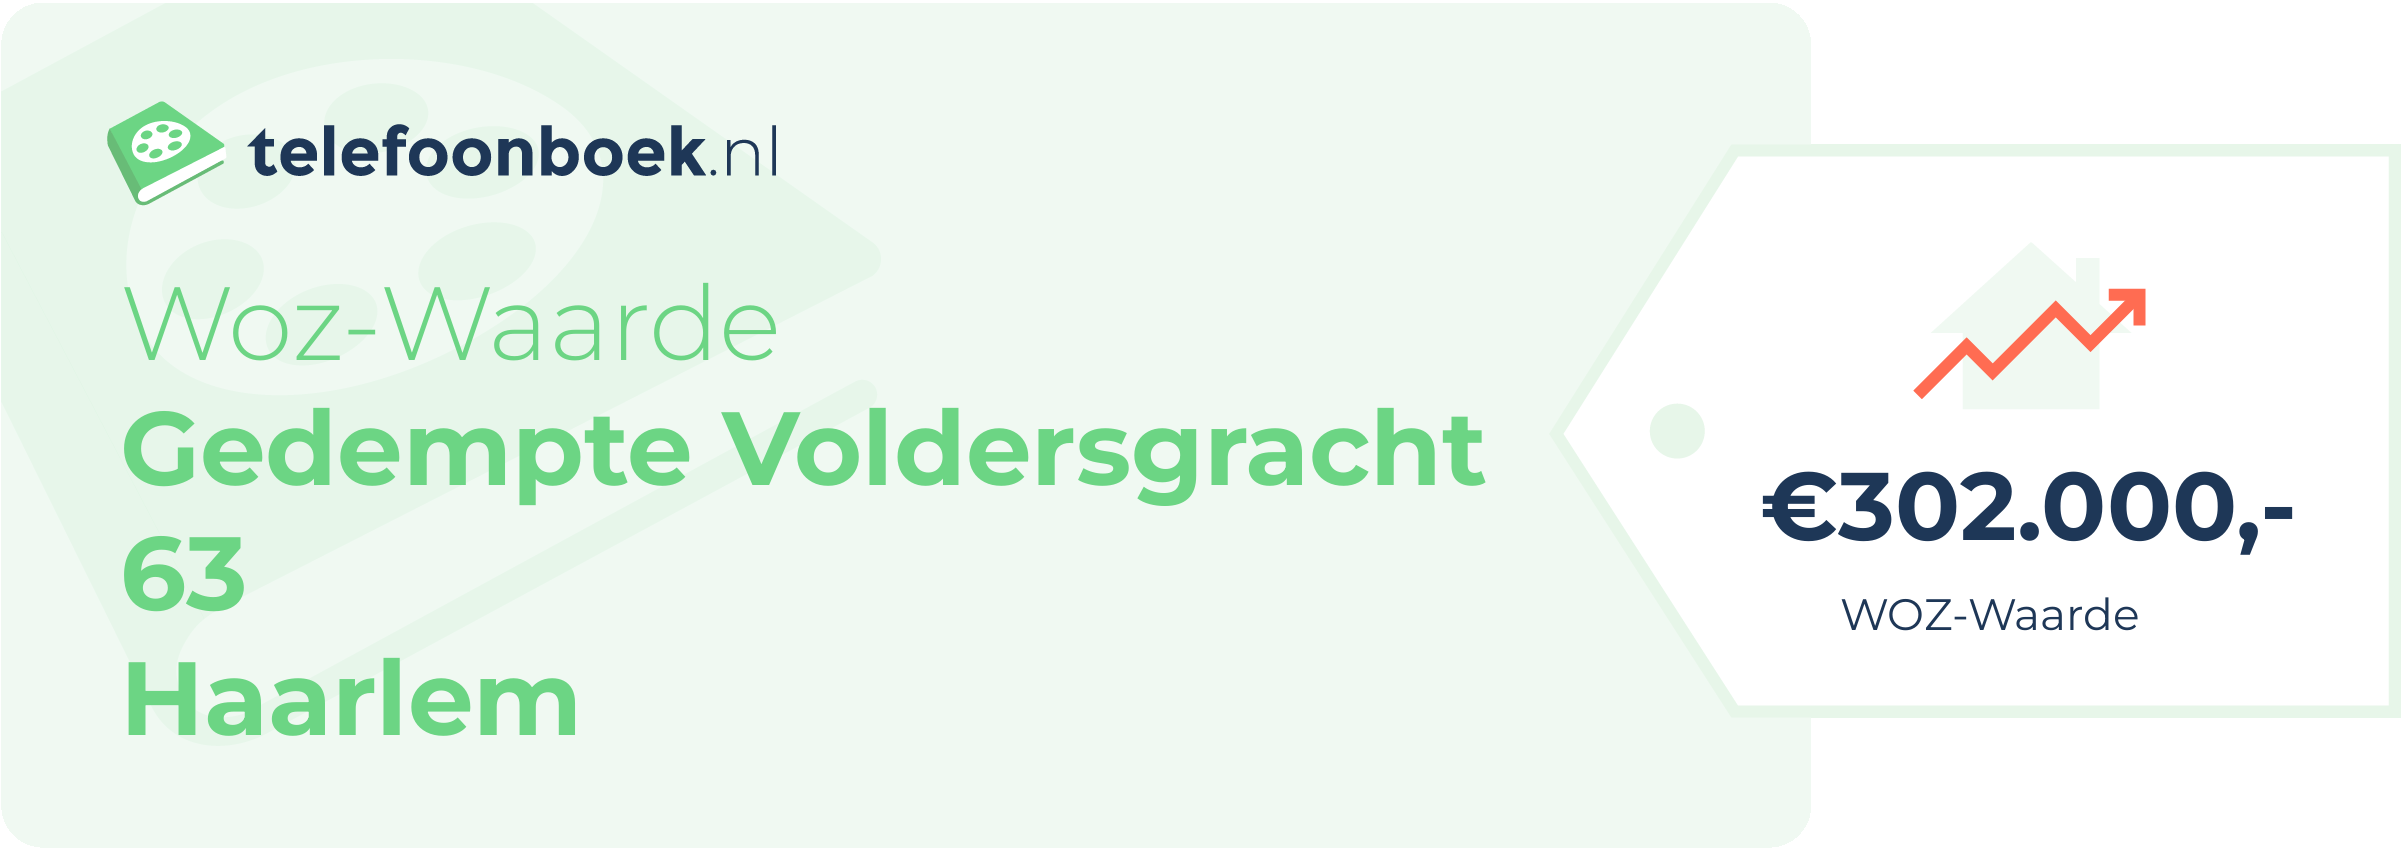 WOZ-waarde Gedempte Voldersgracht 63 Haarlem